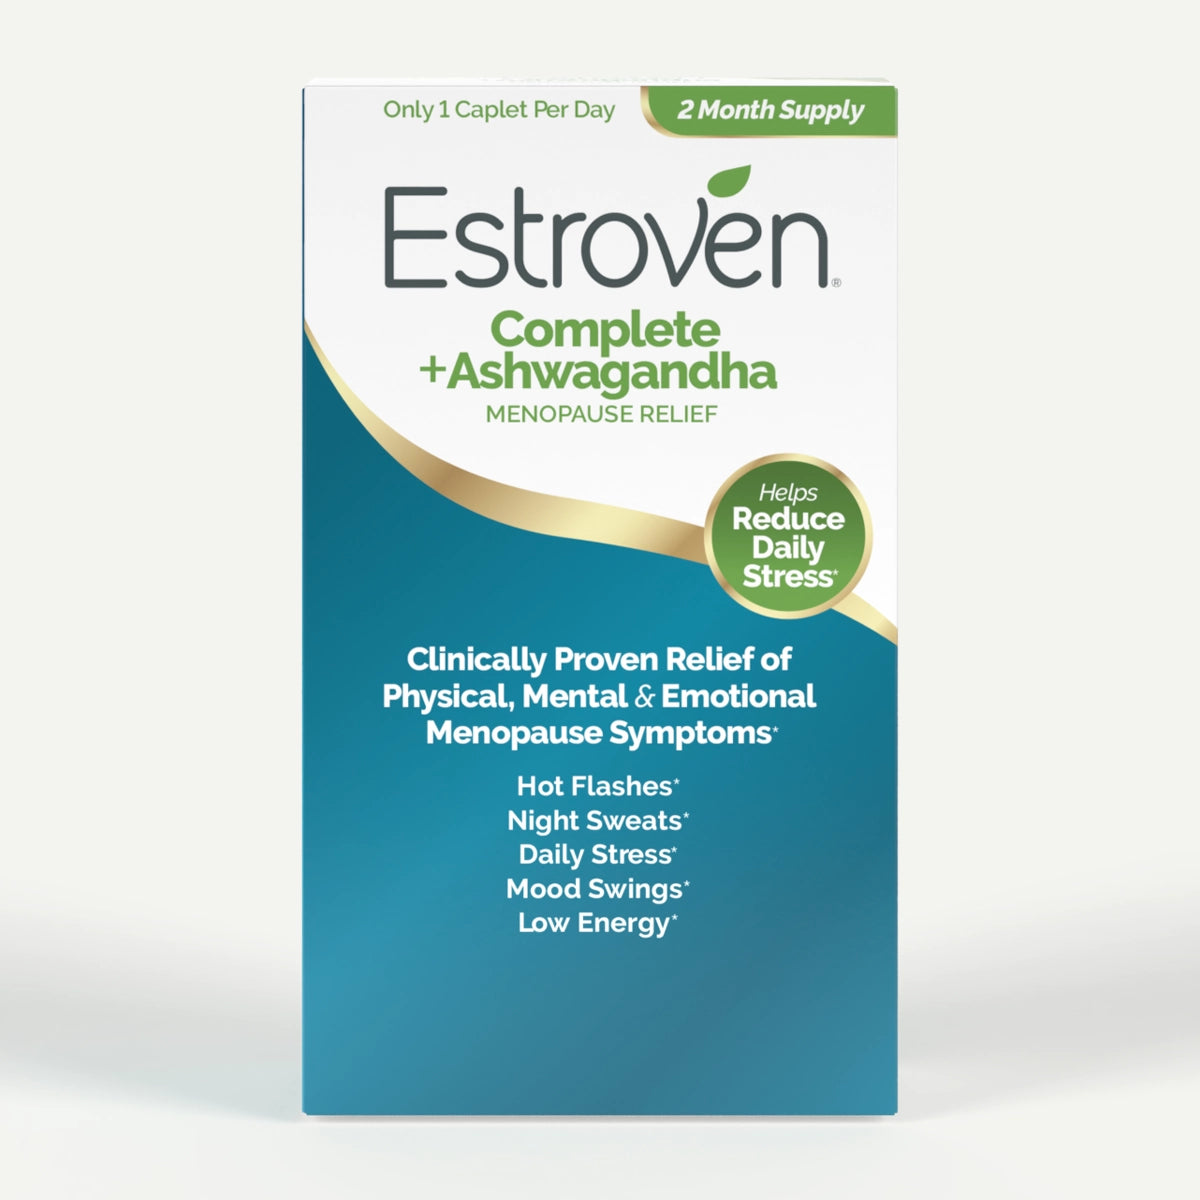 Estroven® Complete + Ashwagandha Menopause Relief